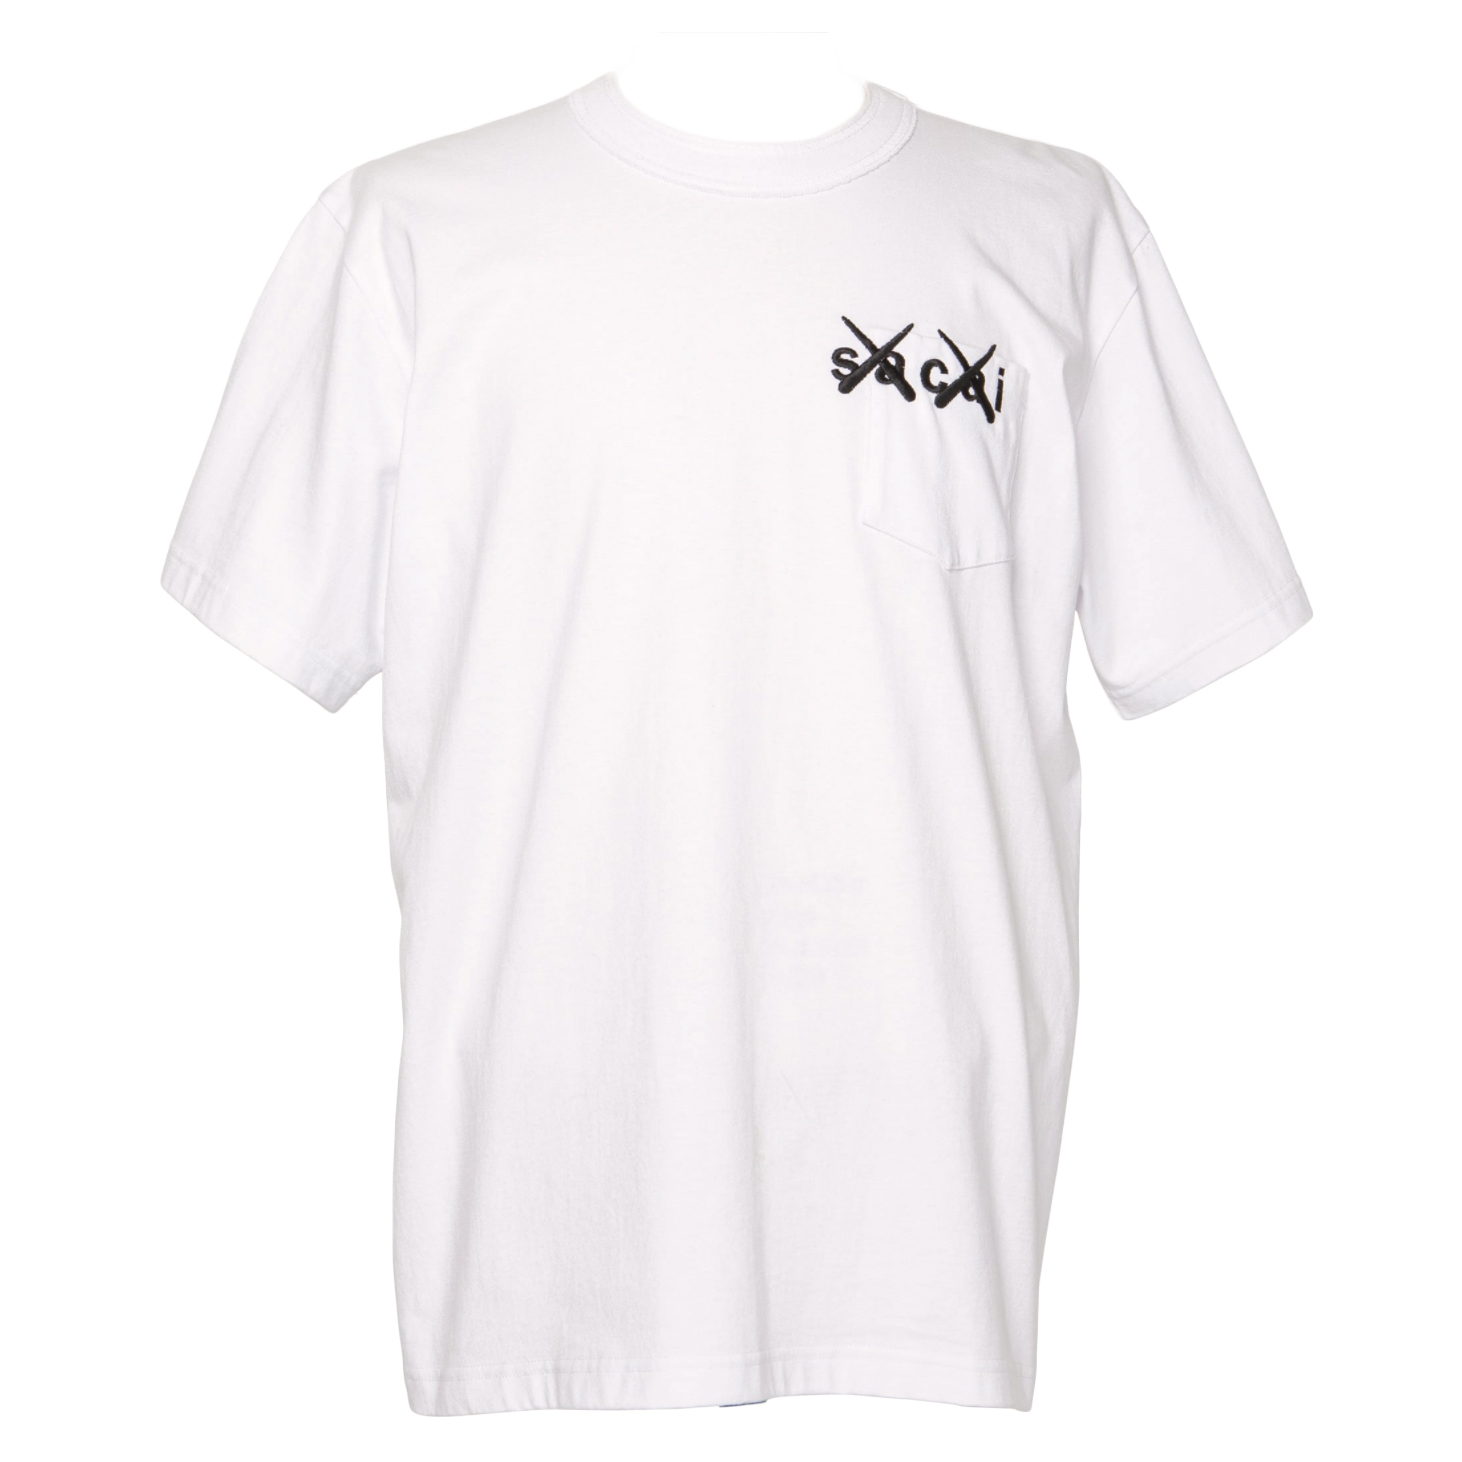 KAWS x Sacai Embroidery Tee White x Black Men's - FW21 - US